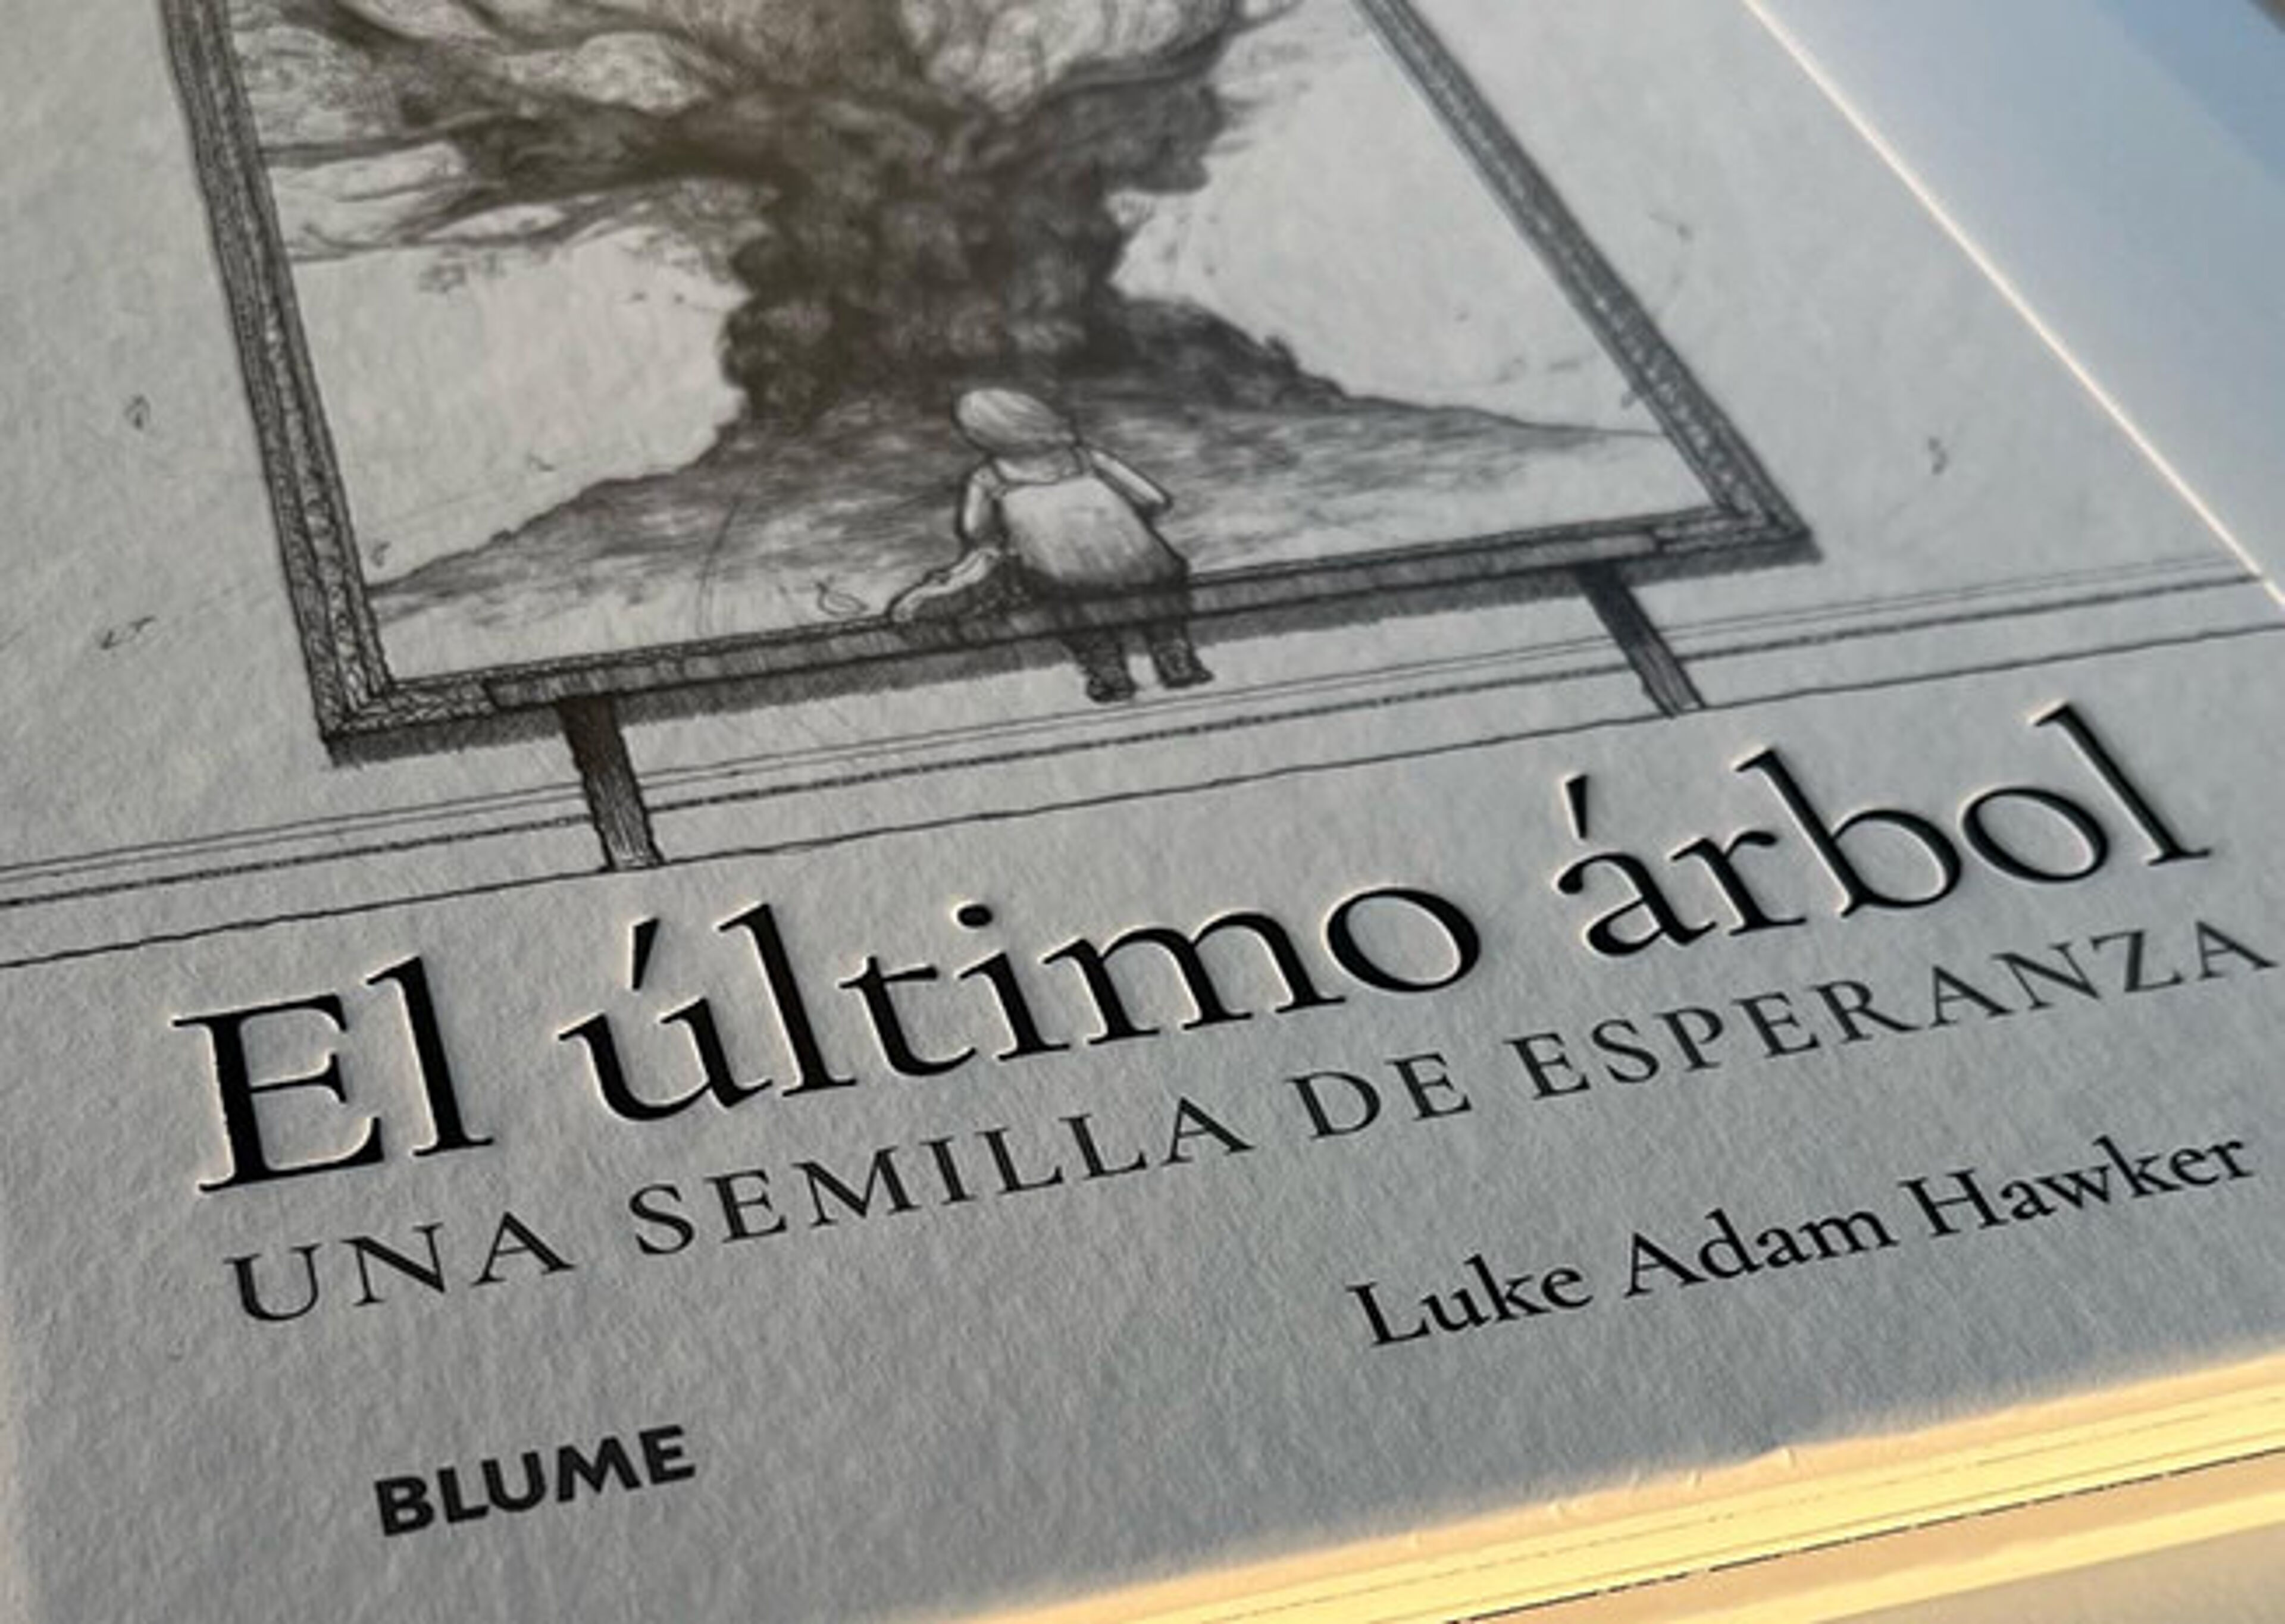 Detall del llibre "El último árbol" amb una il·lustració d'un arbre i una persona, amb el subtítol "UNA SEMILLA DE ESPERANZA" i el nom de l'autor, Luke Adam Hawker.